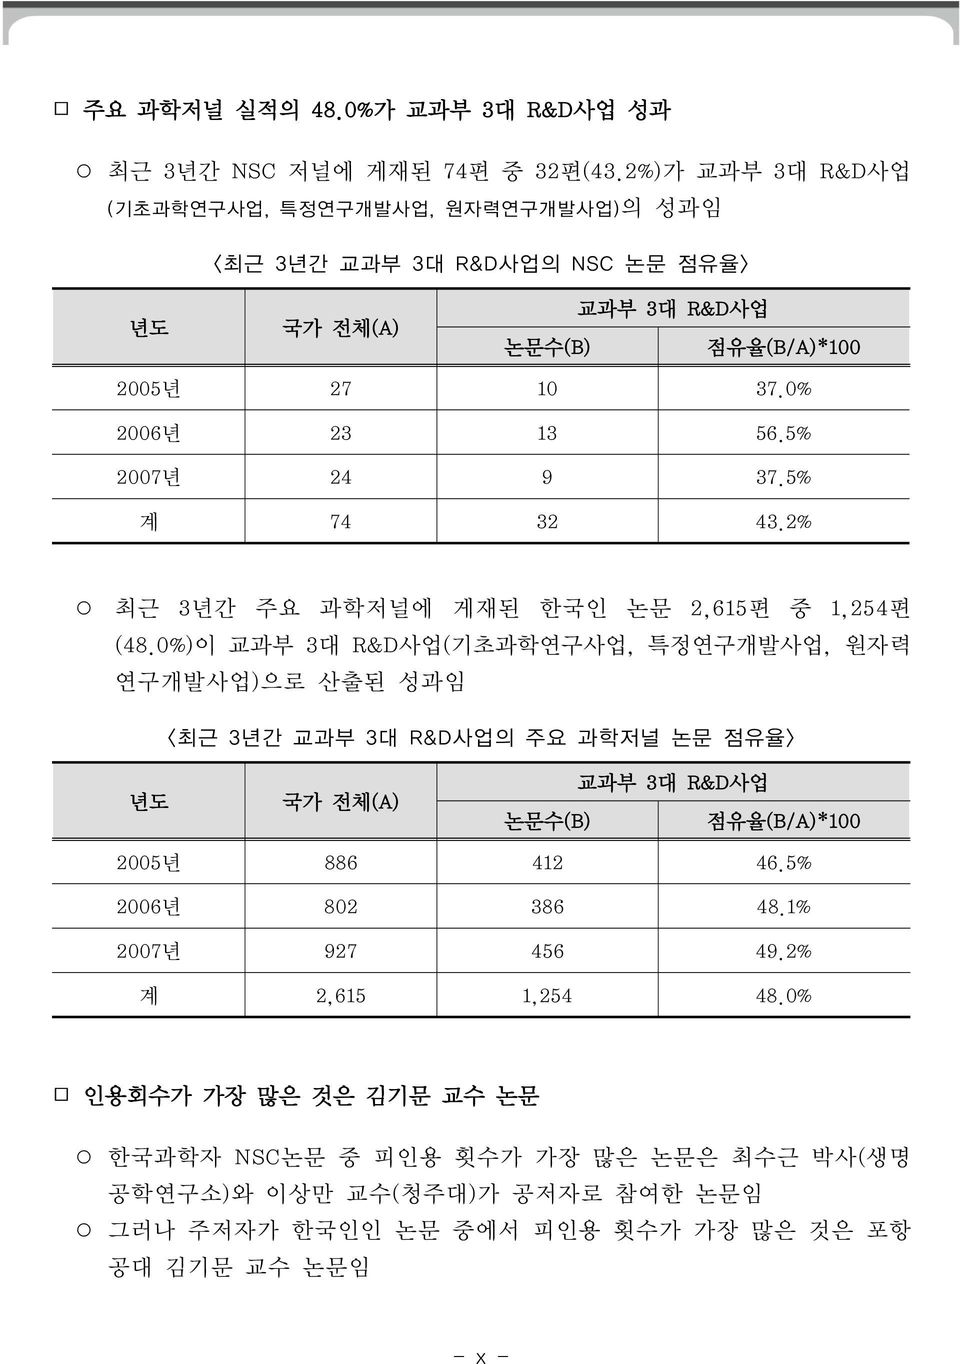 5% 2007년 24 9 37.5% 계 74 32 43.2% 최근 3년간 주요 과학저널에 게재된 한국인 논문 2,615편 중 1,254편 (48.